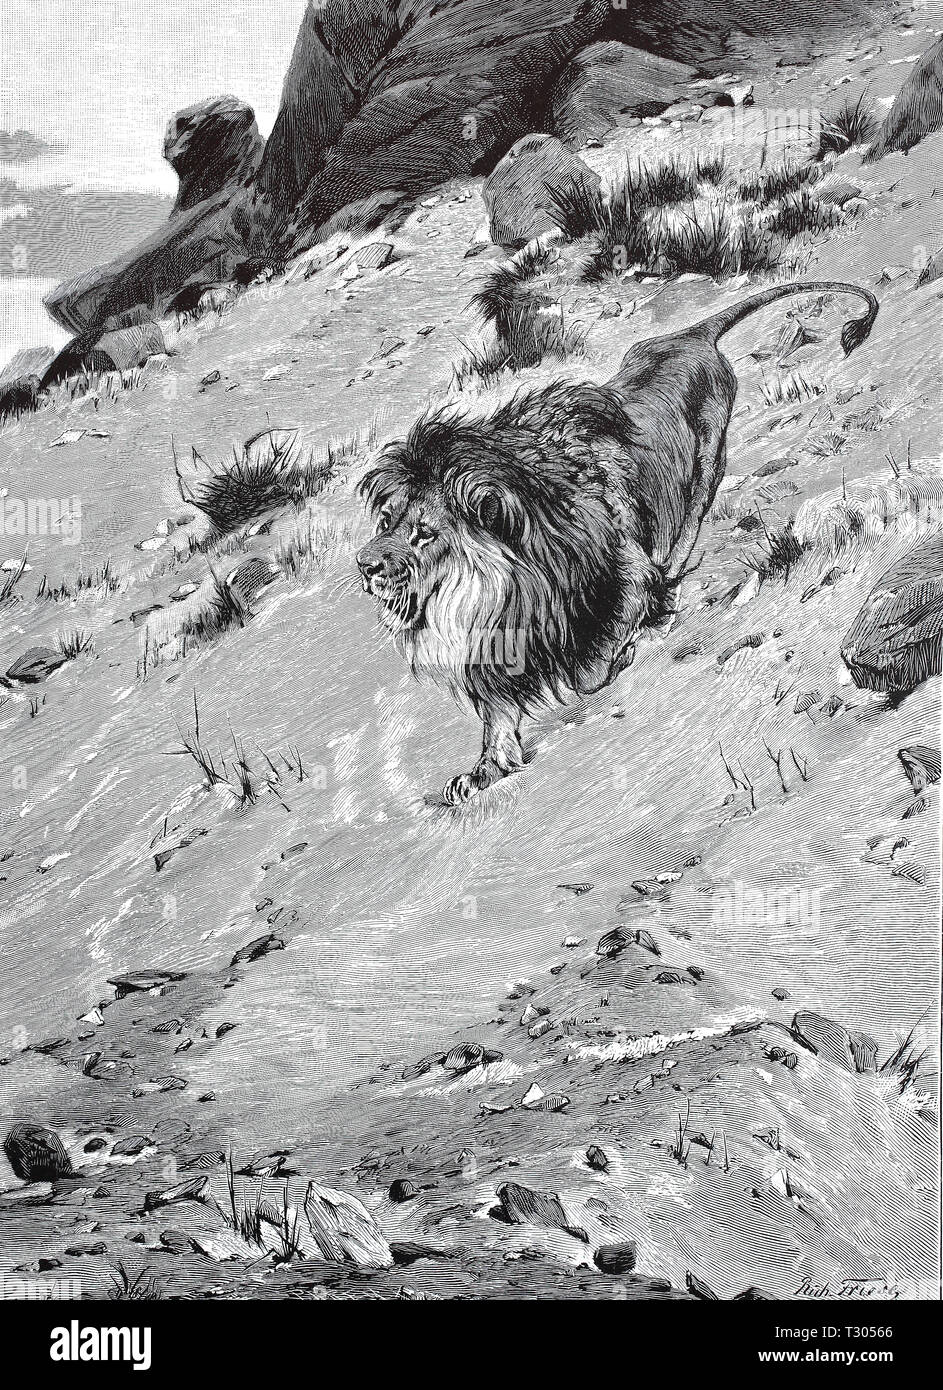 Digital verbesserte Reproduktion, einzelne männliche Löwe in einem gebirgigen afrikanische Landschaft, einzelner männlicher Löwe in einer gebirgigen afrikanischen Landschaft, von einem ursprünglichen Drucken aus dem 19. Jahrhundert Stockfoto